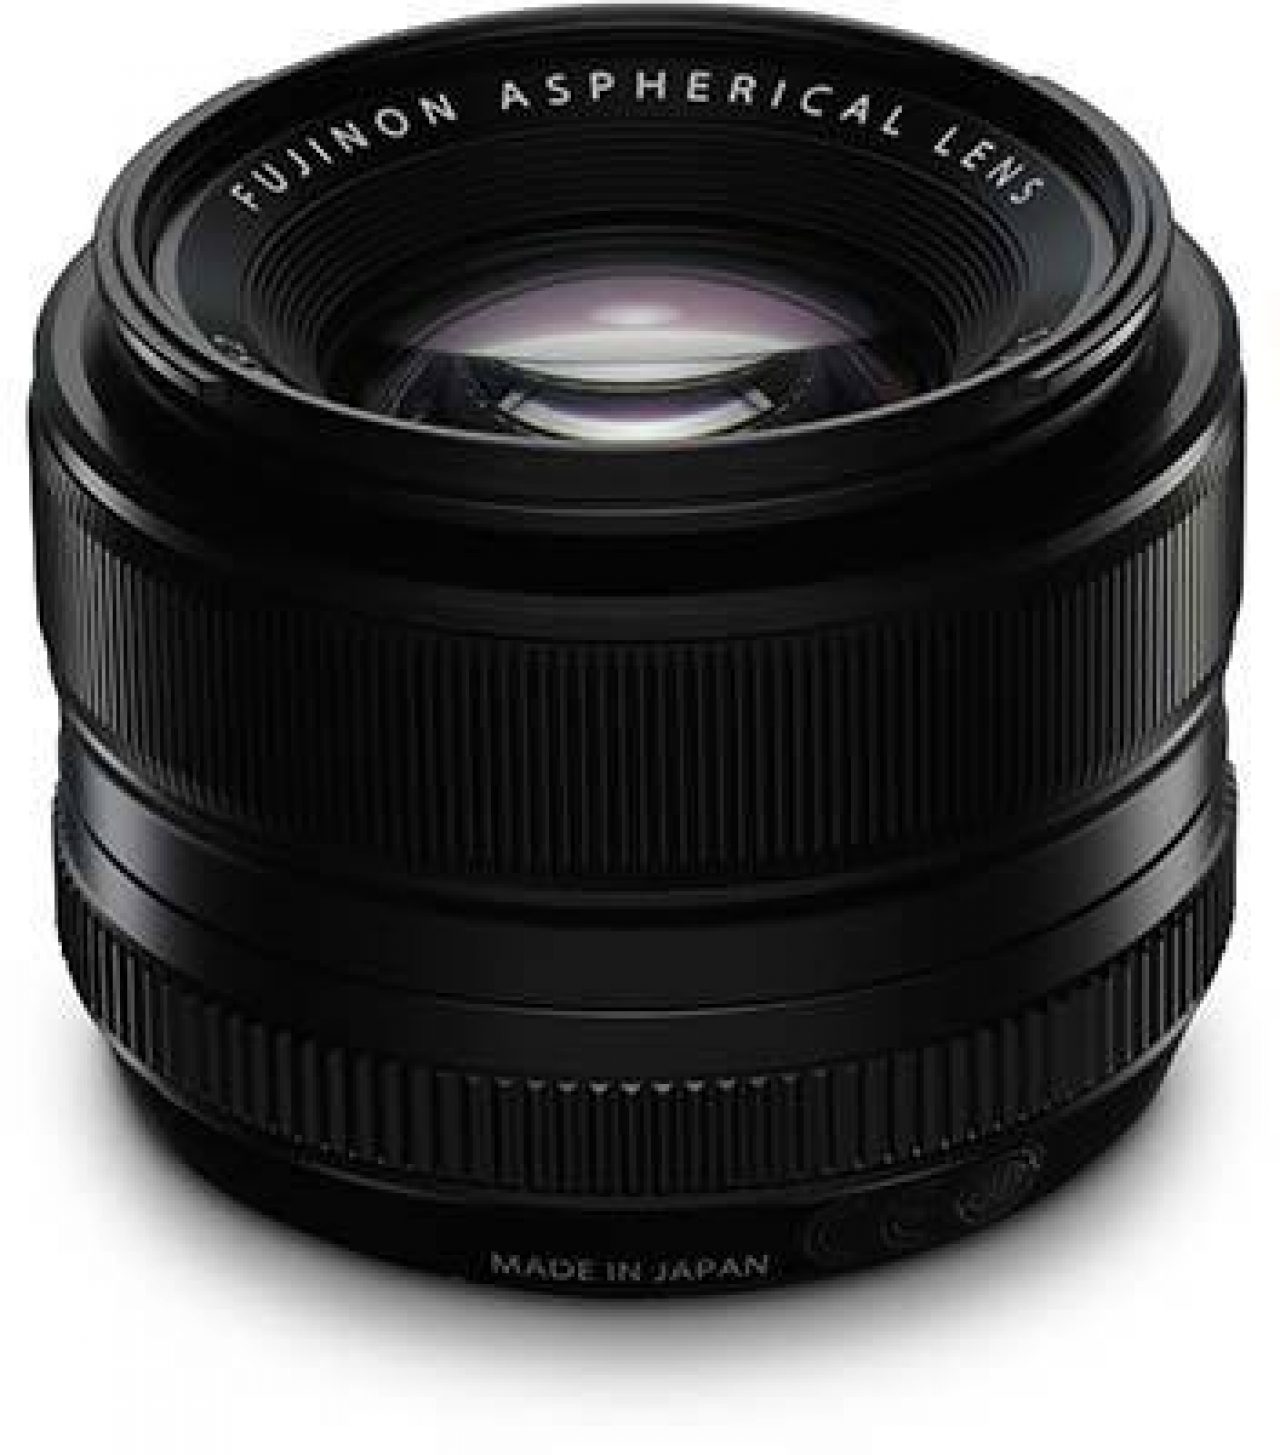 カメラ レンズ(単焦点) Fujifilm XF 35mm F1.4 R Review | Photography Blog